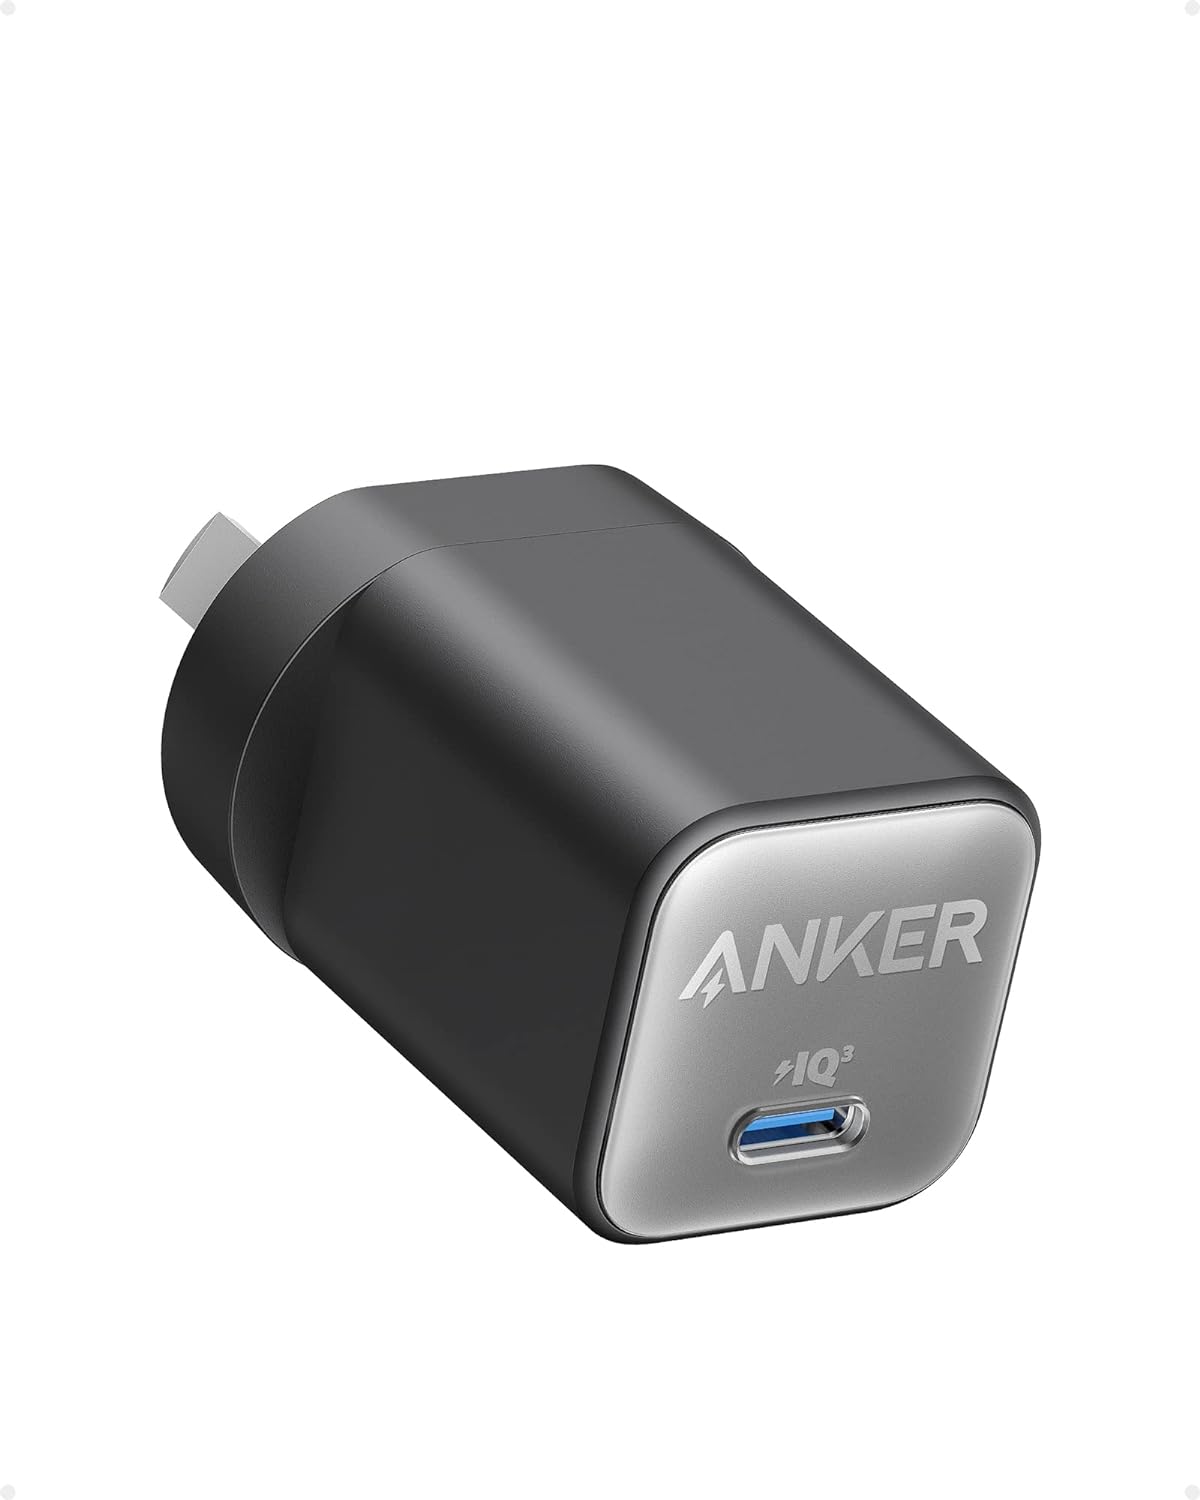 Anker 511 Charger (Nano 3, 30W) - Black